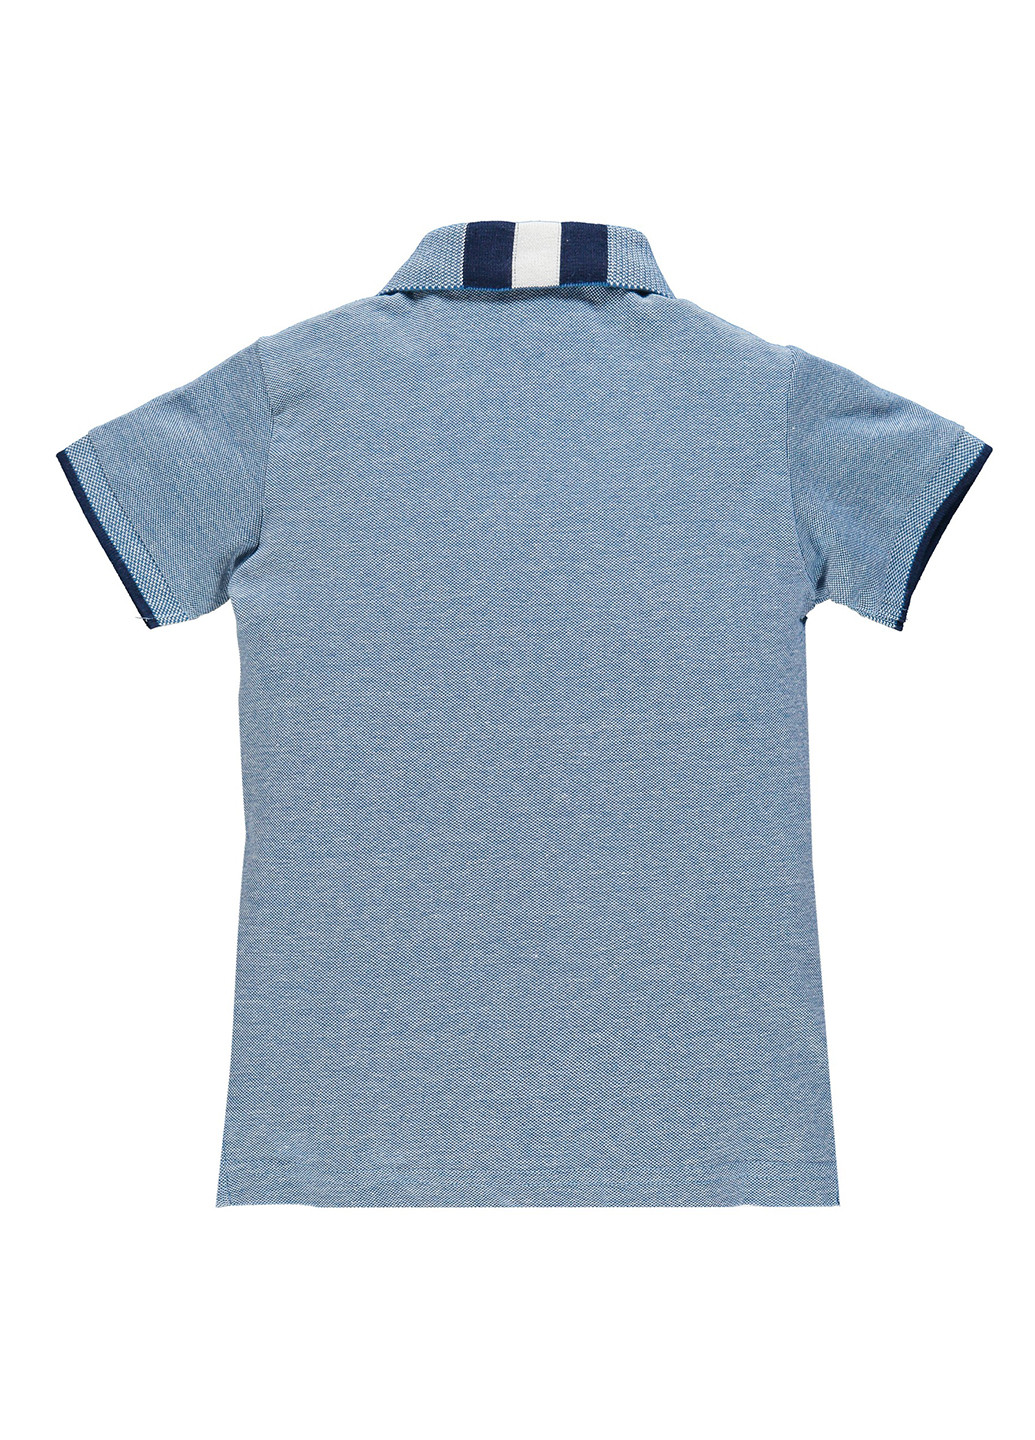 Синяя детская футболка-поло для мальчика Brums с надписью